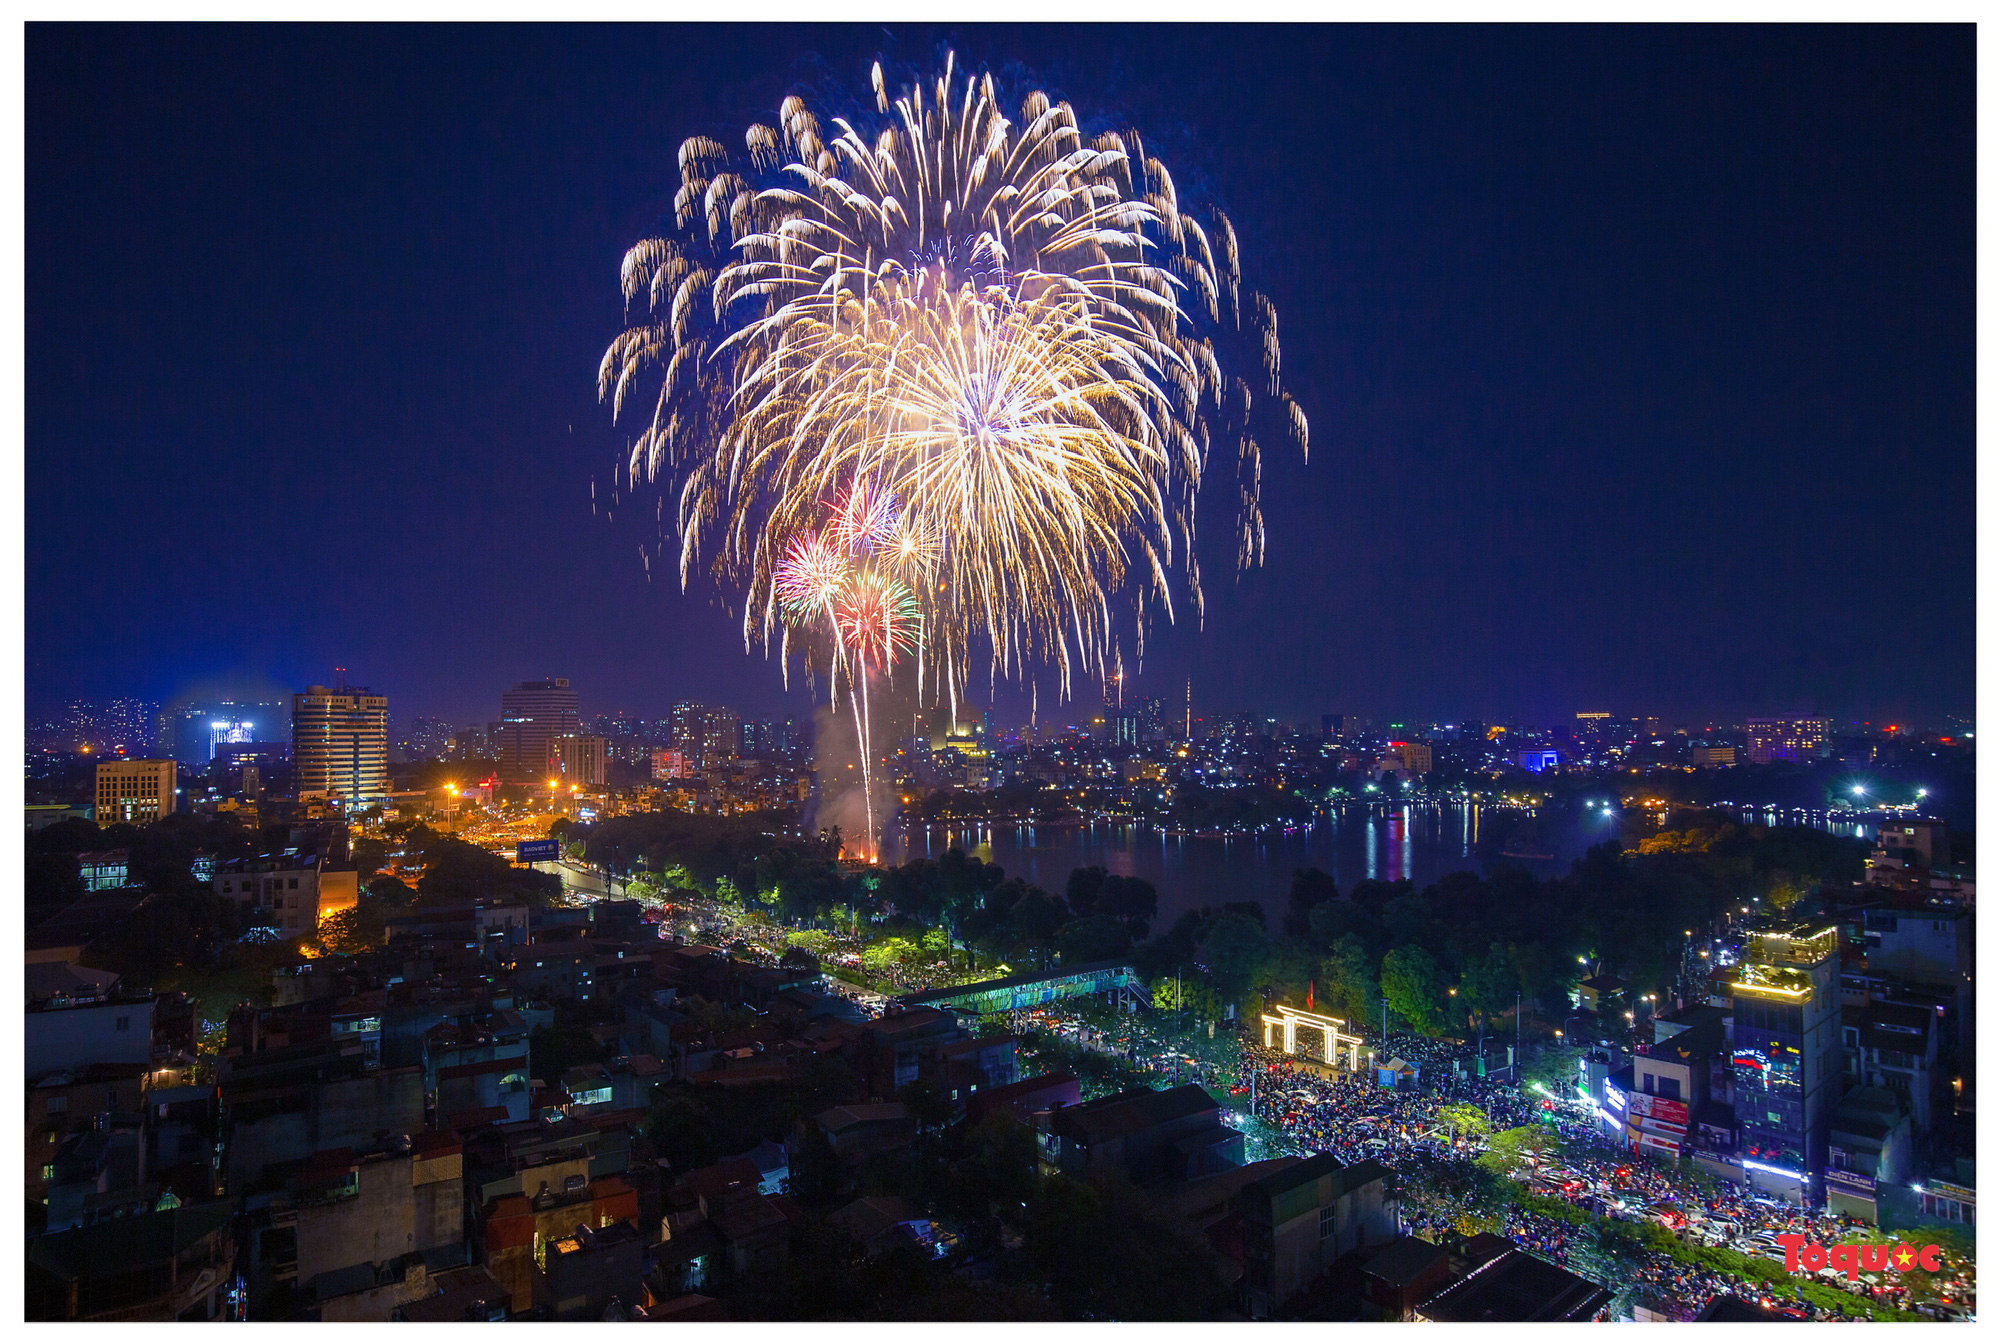 Chùm ảnh: Mãn nhãn với màn pháo hoa chào đón năm mới tại thủ đô Hà Nội - Ảnh 9.